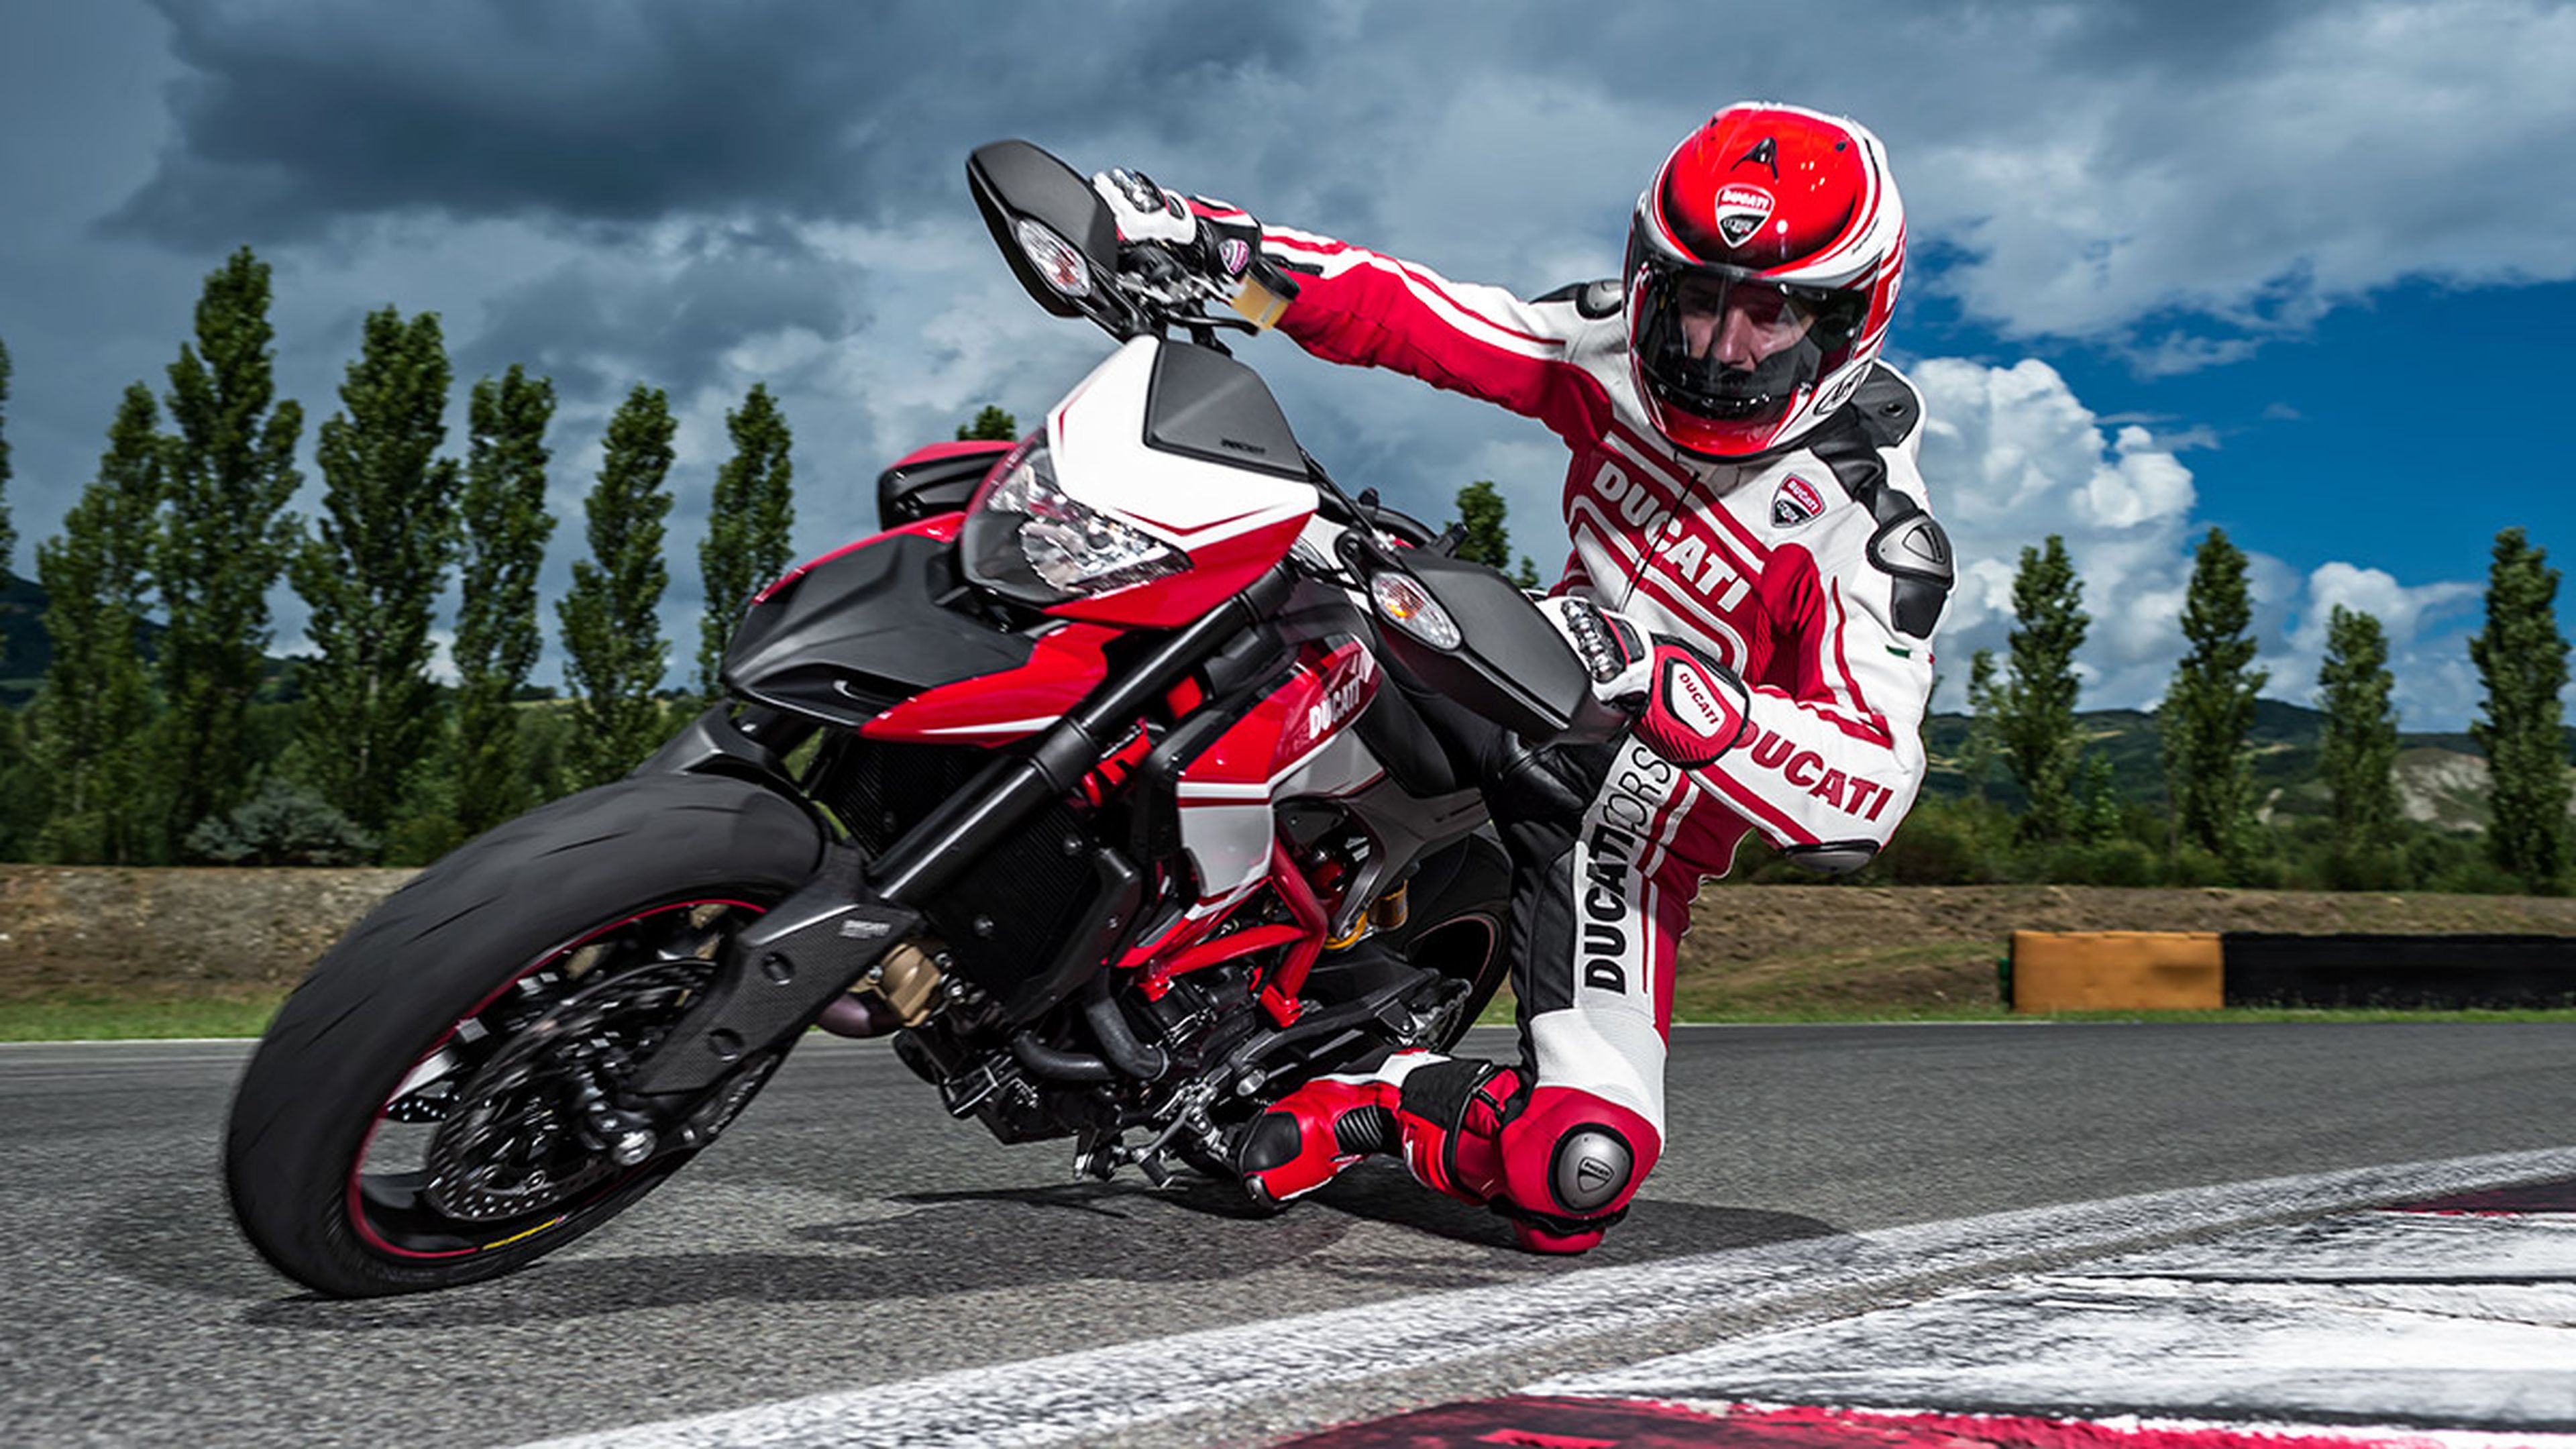 Ducati Hypermotard SP 2015 curva